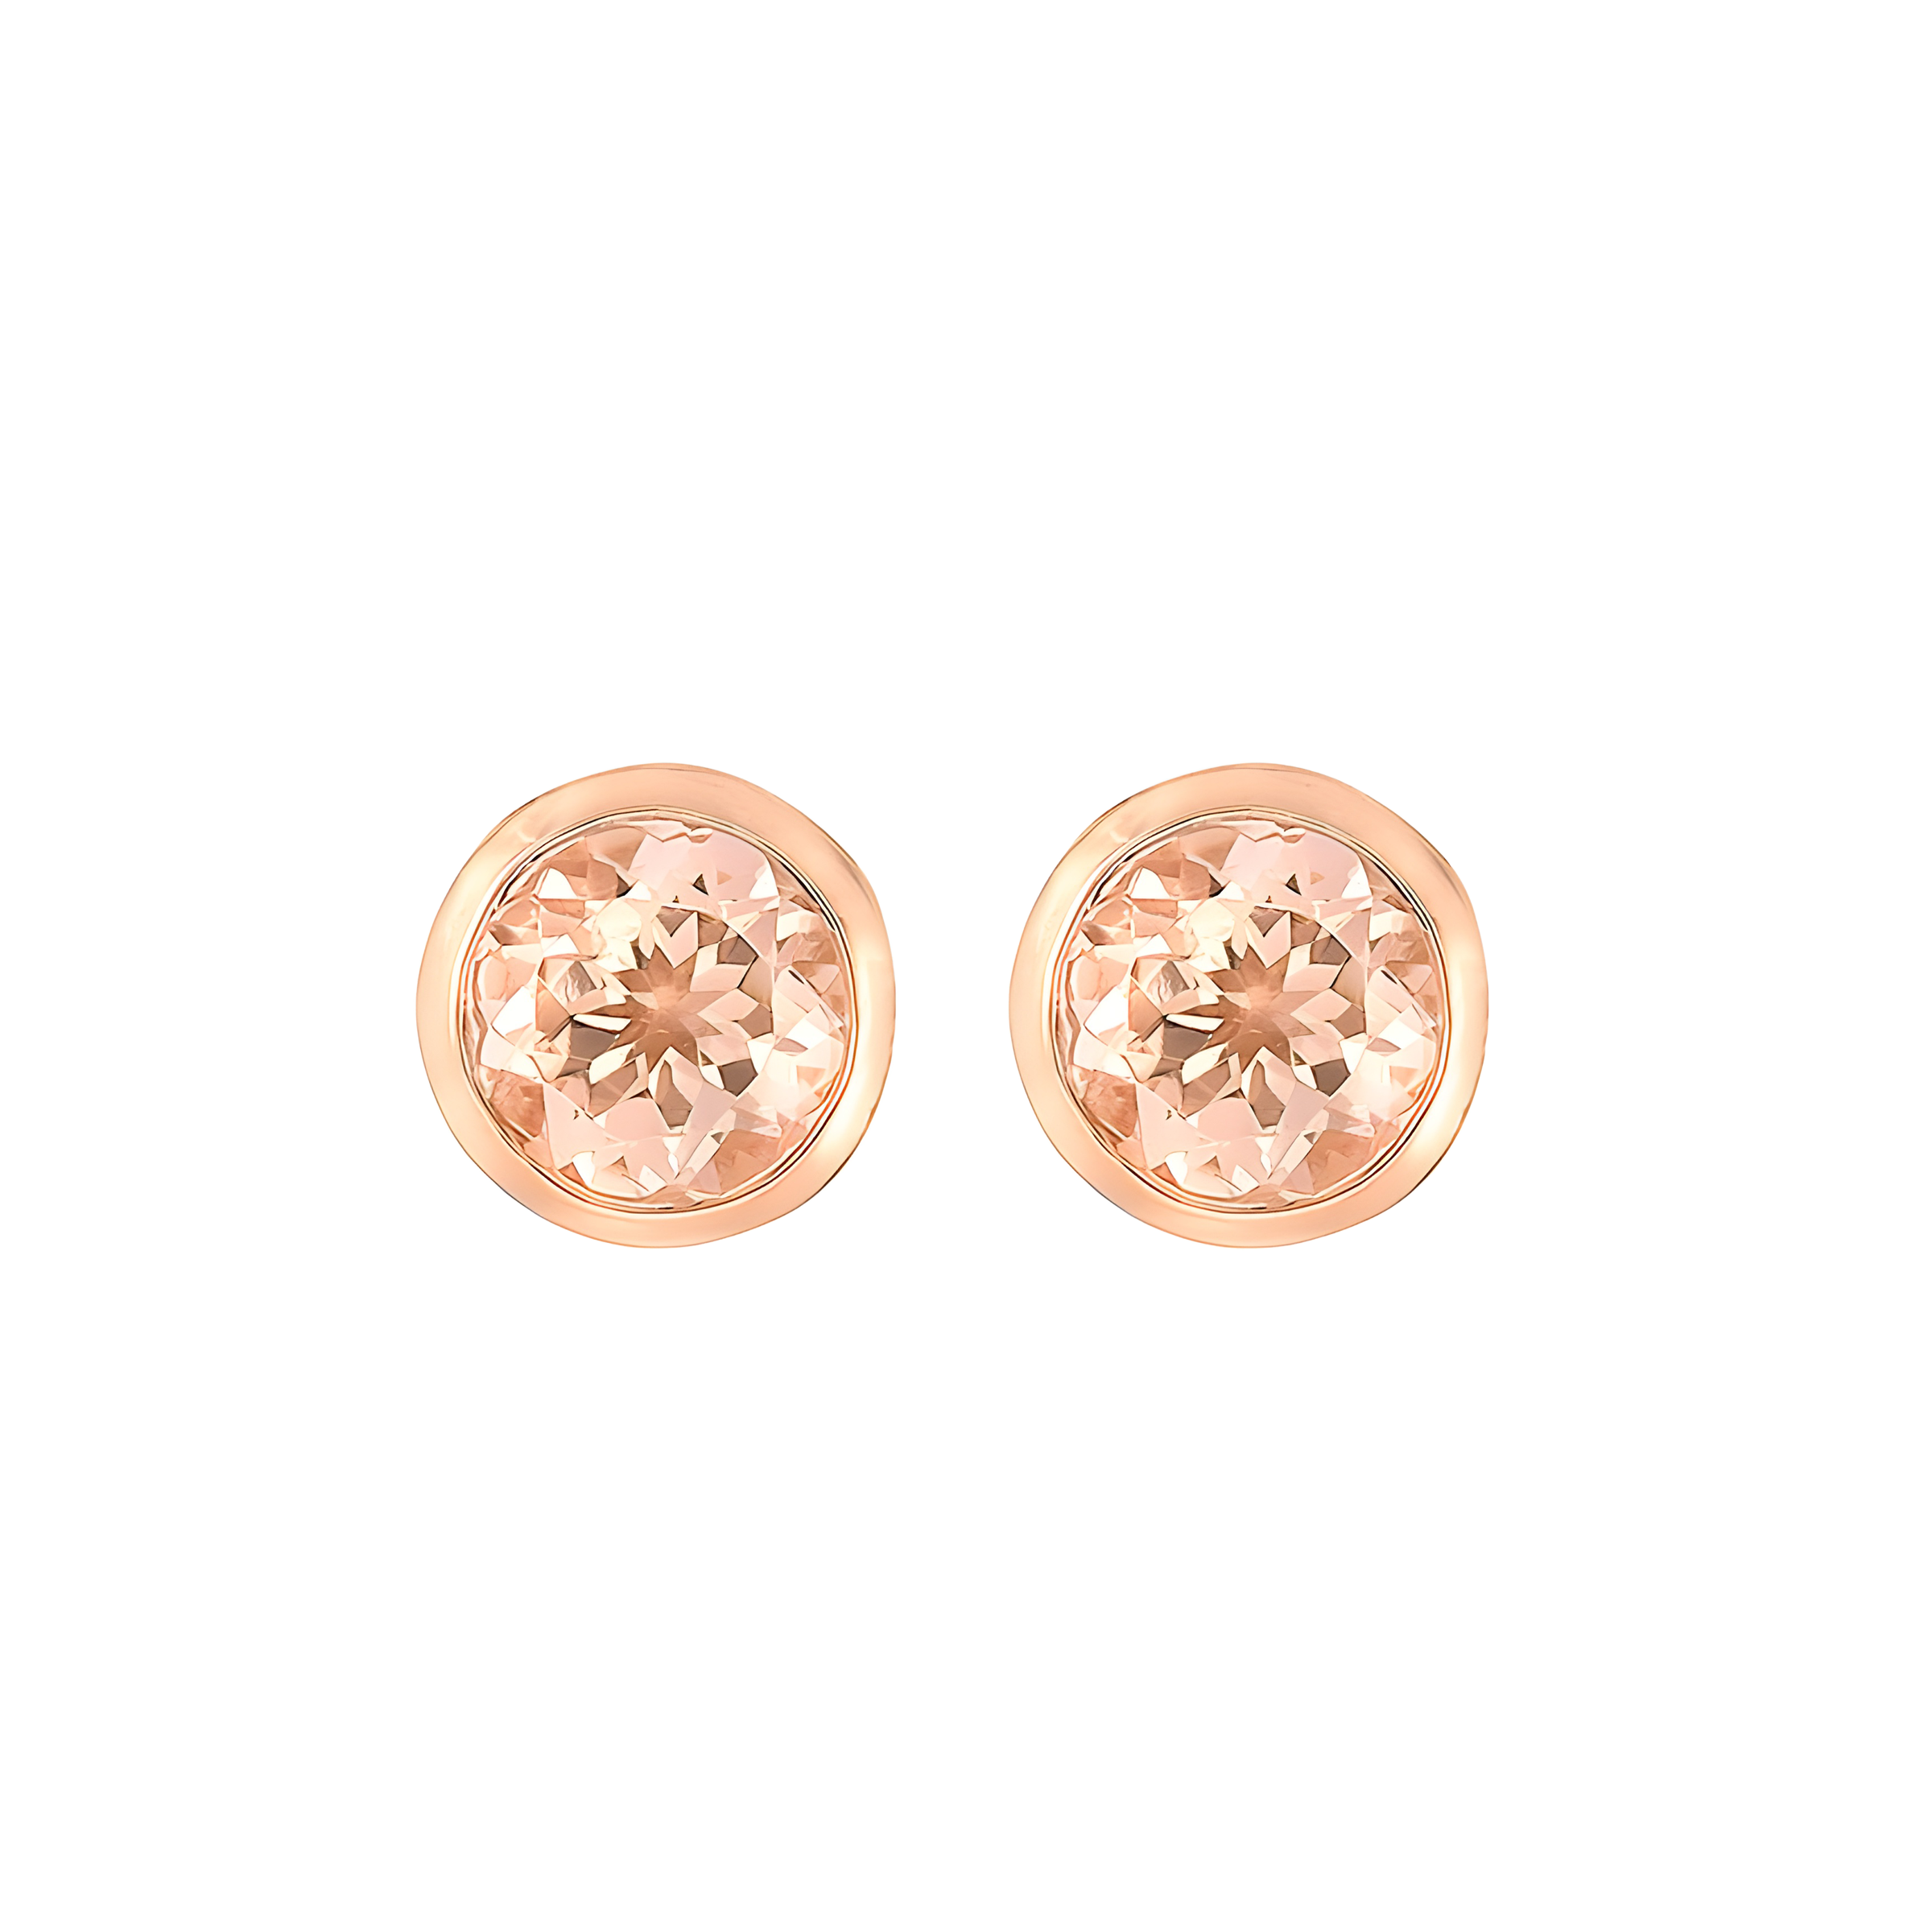 Bezel Set Morganite Stud Earrings in 18k Rose Gold